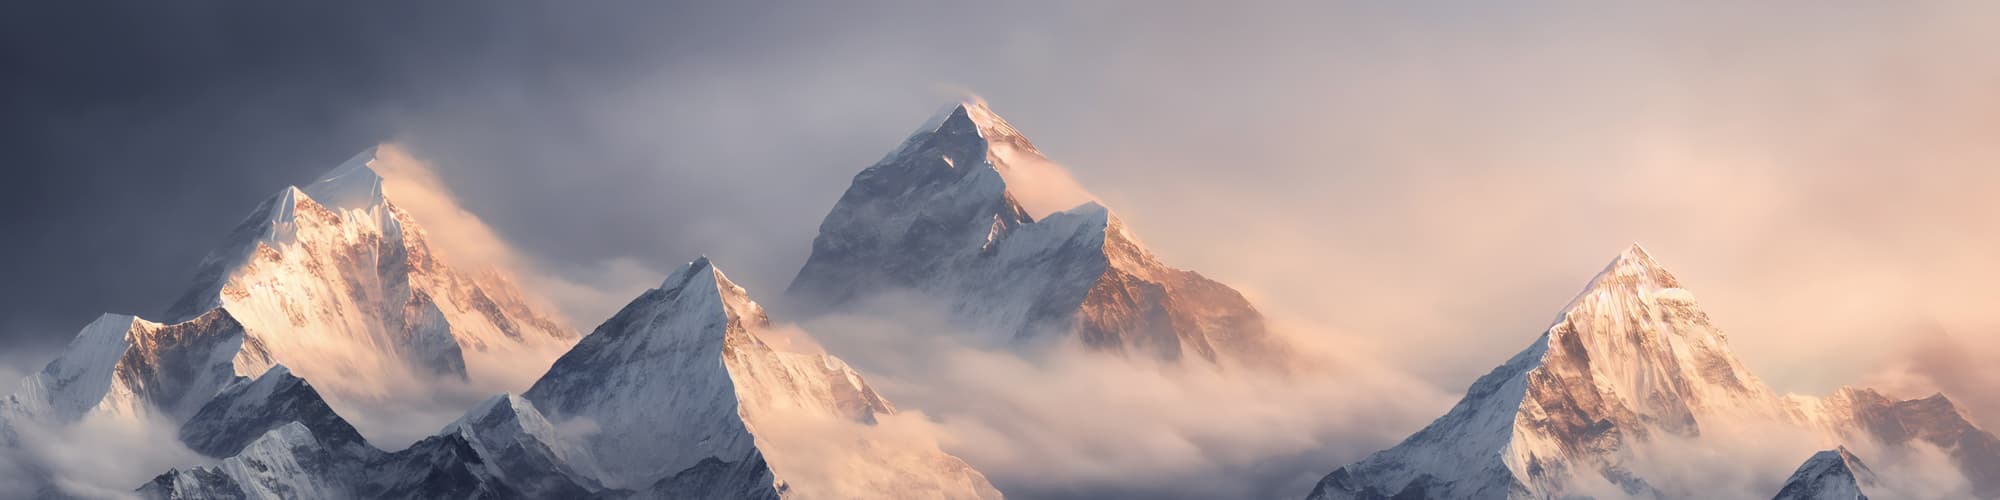 Trekking Everest : trek, circuit et voyage 